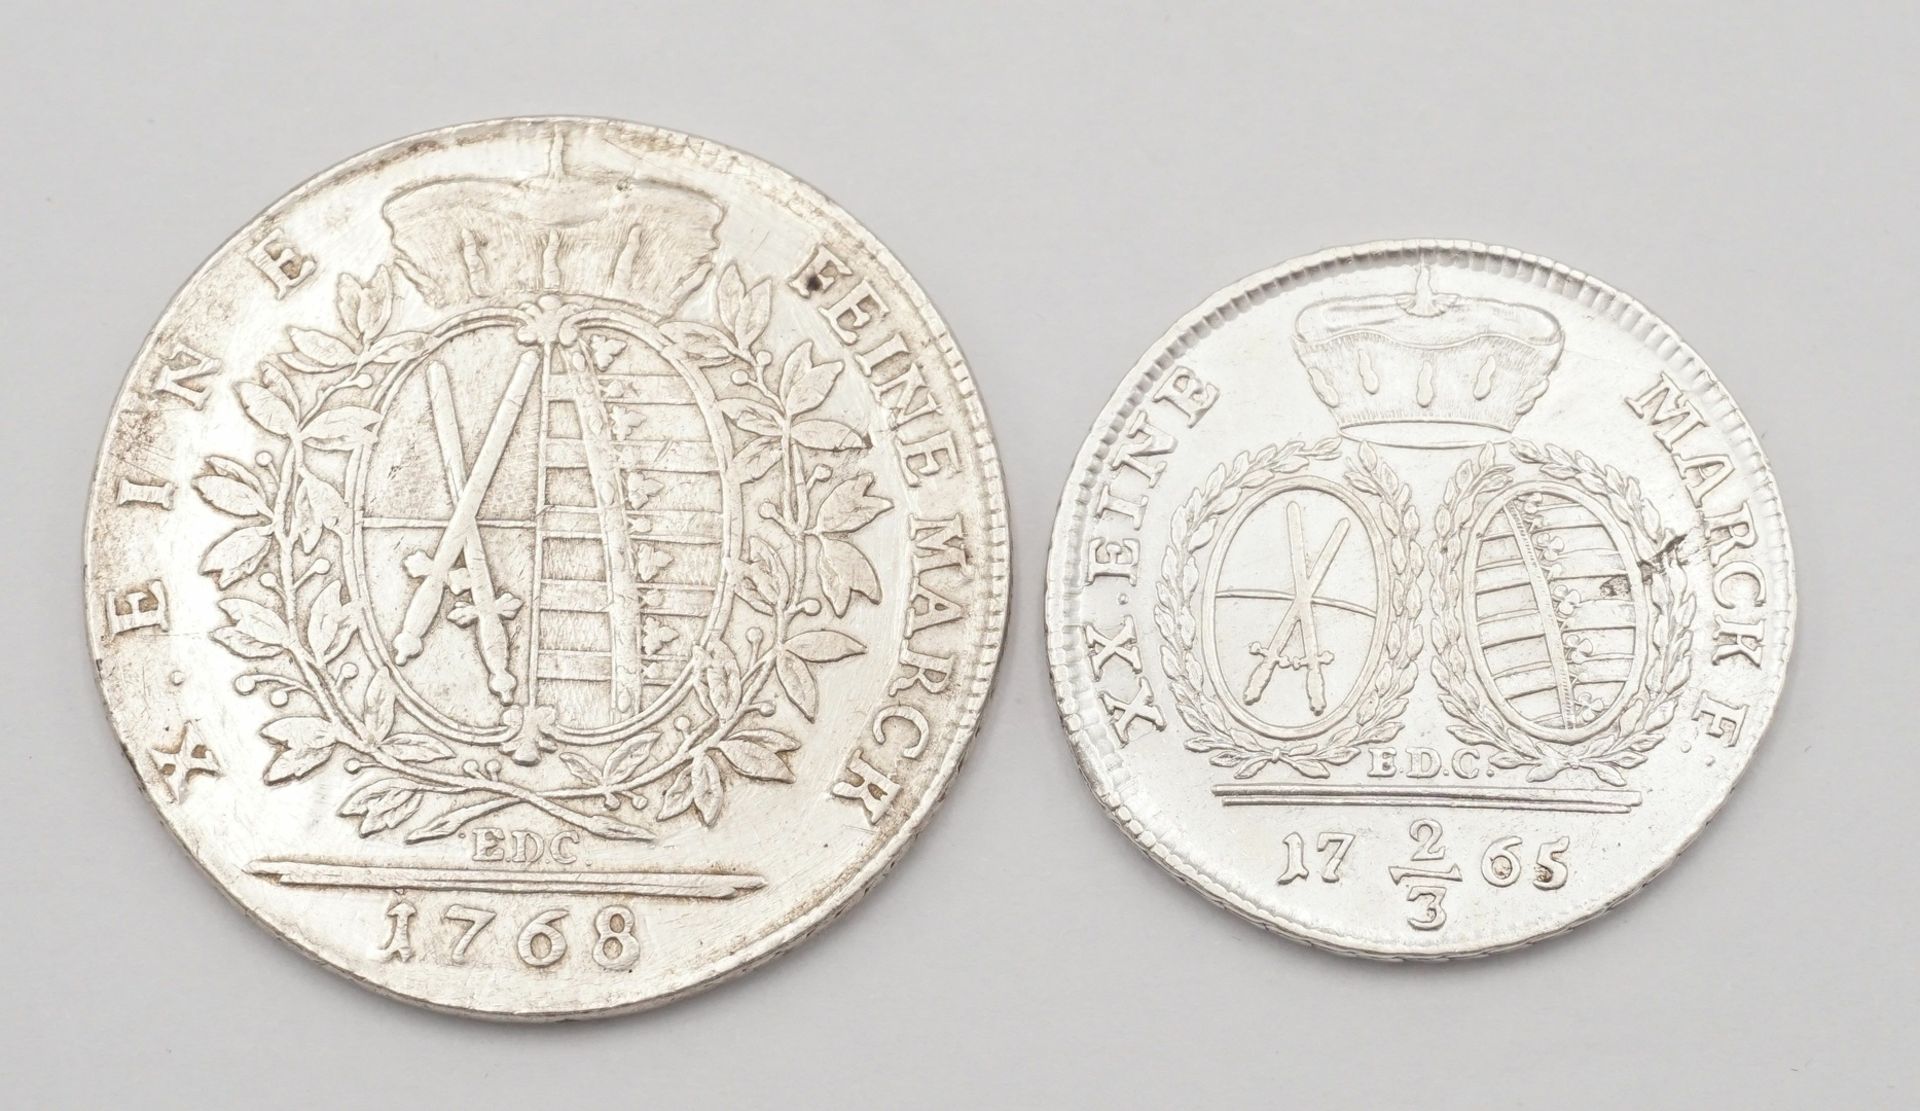 Sachsen, ein Taler 1768 und 2/3 Taler 1765, Silber - Bild 2 aus 2